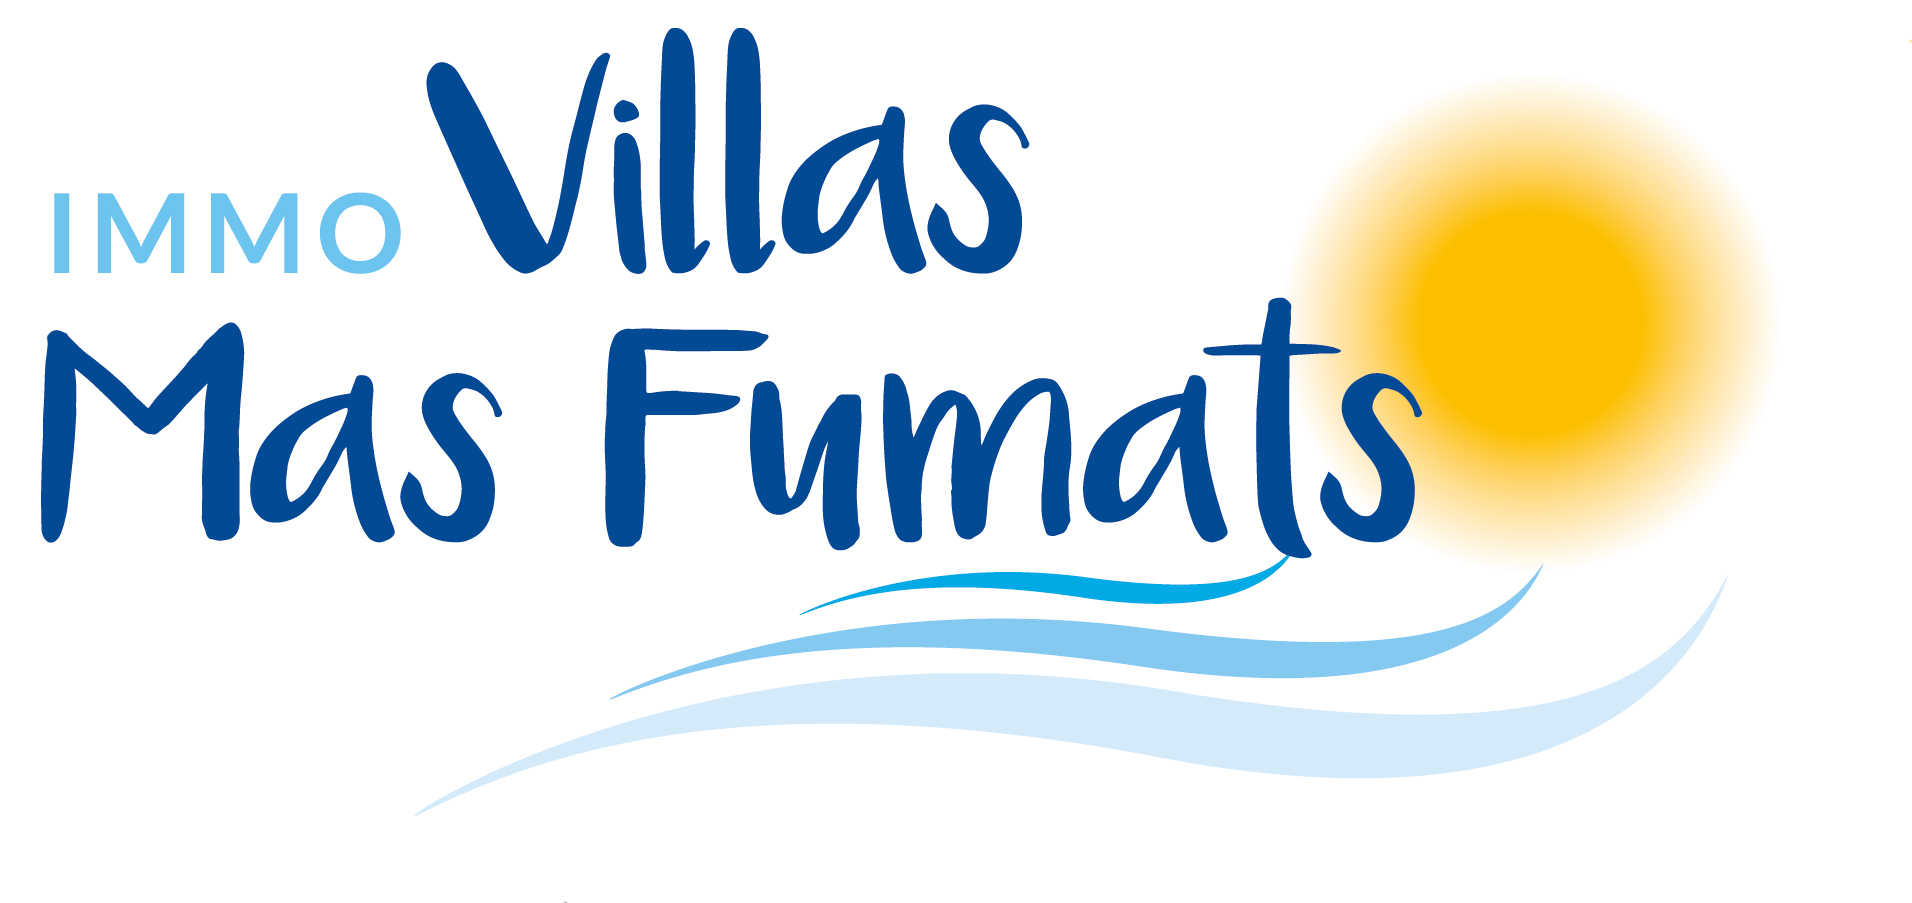 Агентство недвижимости Immo Villas Mas Fumats - Консалтинговые услуги Коста-Брава